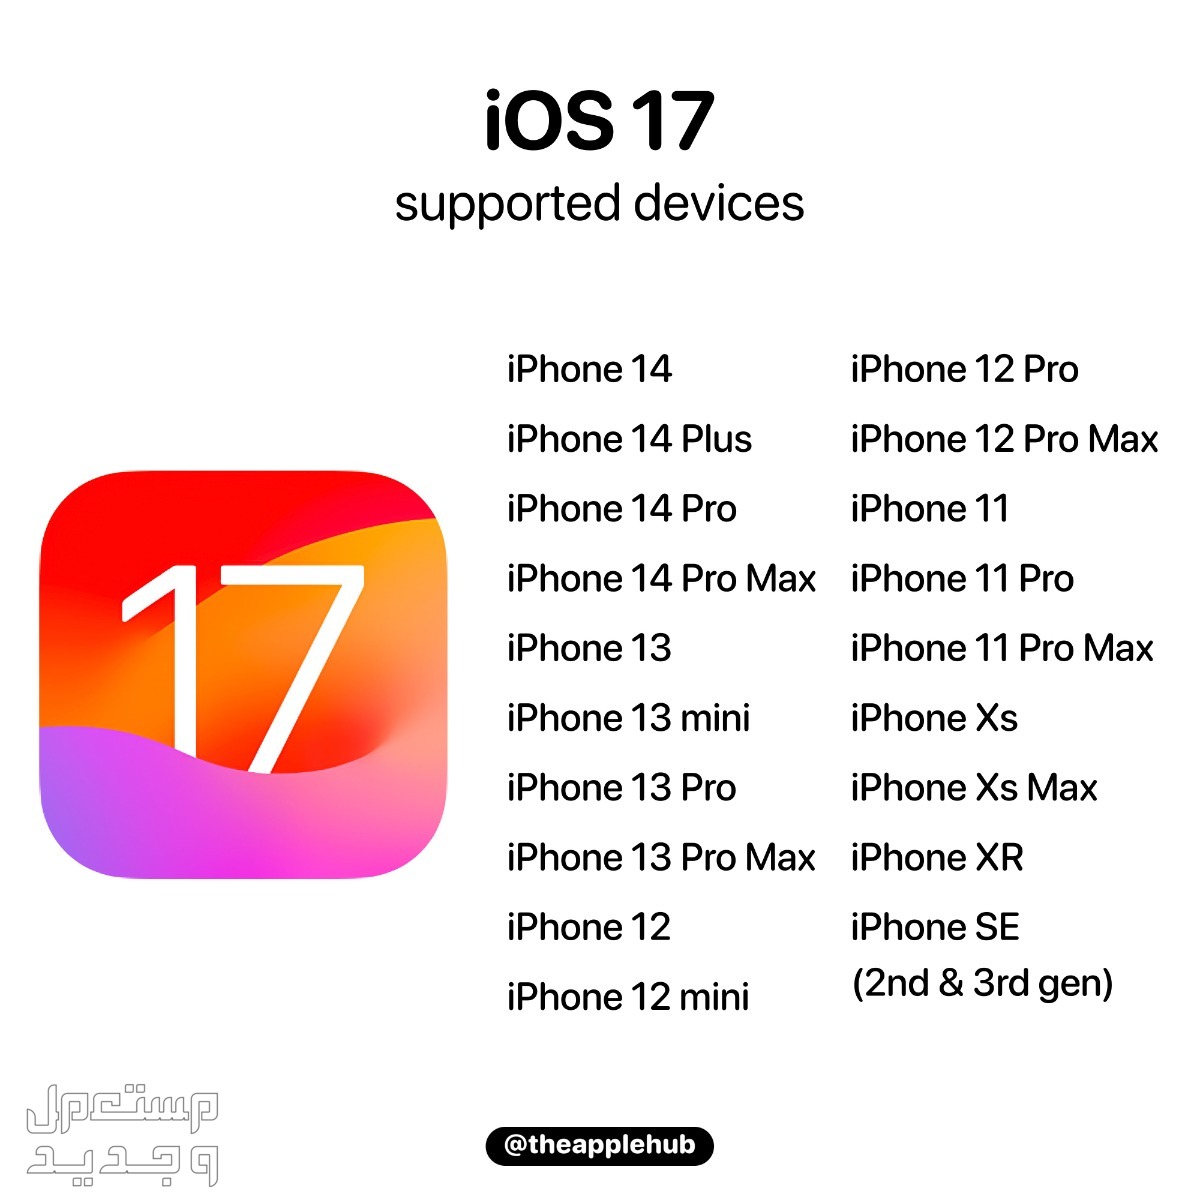 نظام iOS 17 لهواتف ايفون بمميزات جديدة تعرف عليها في الجزائر